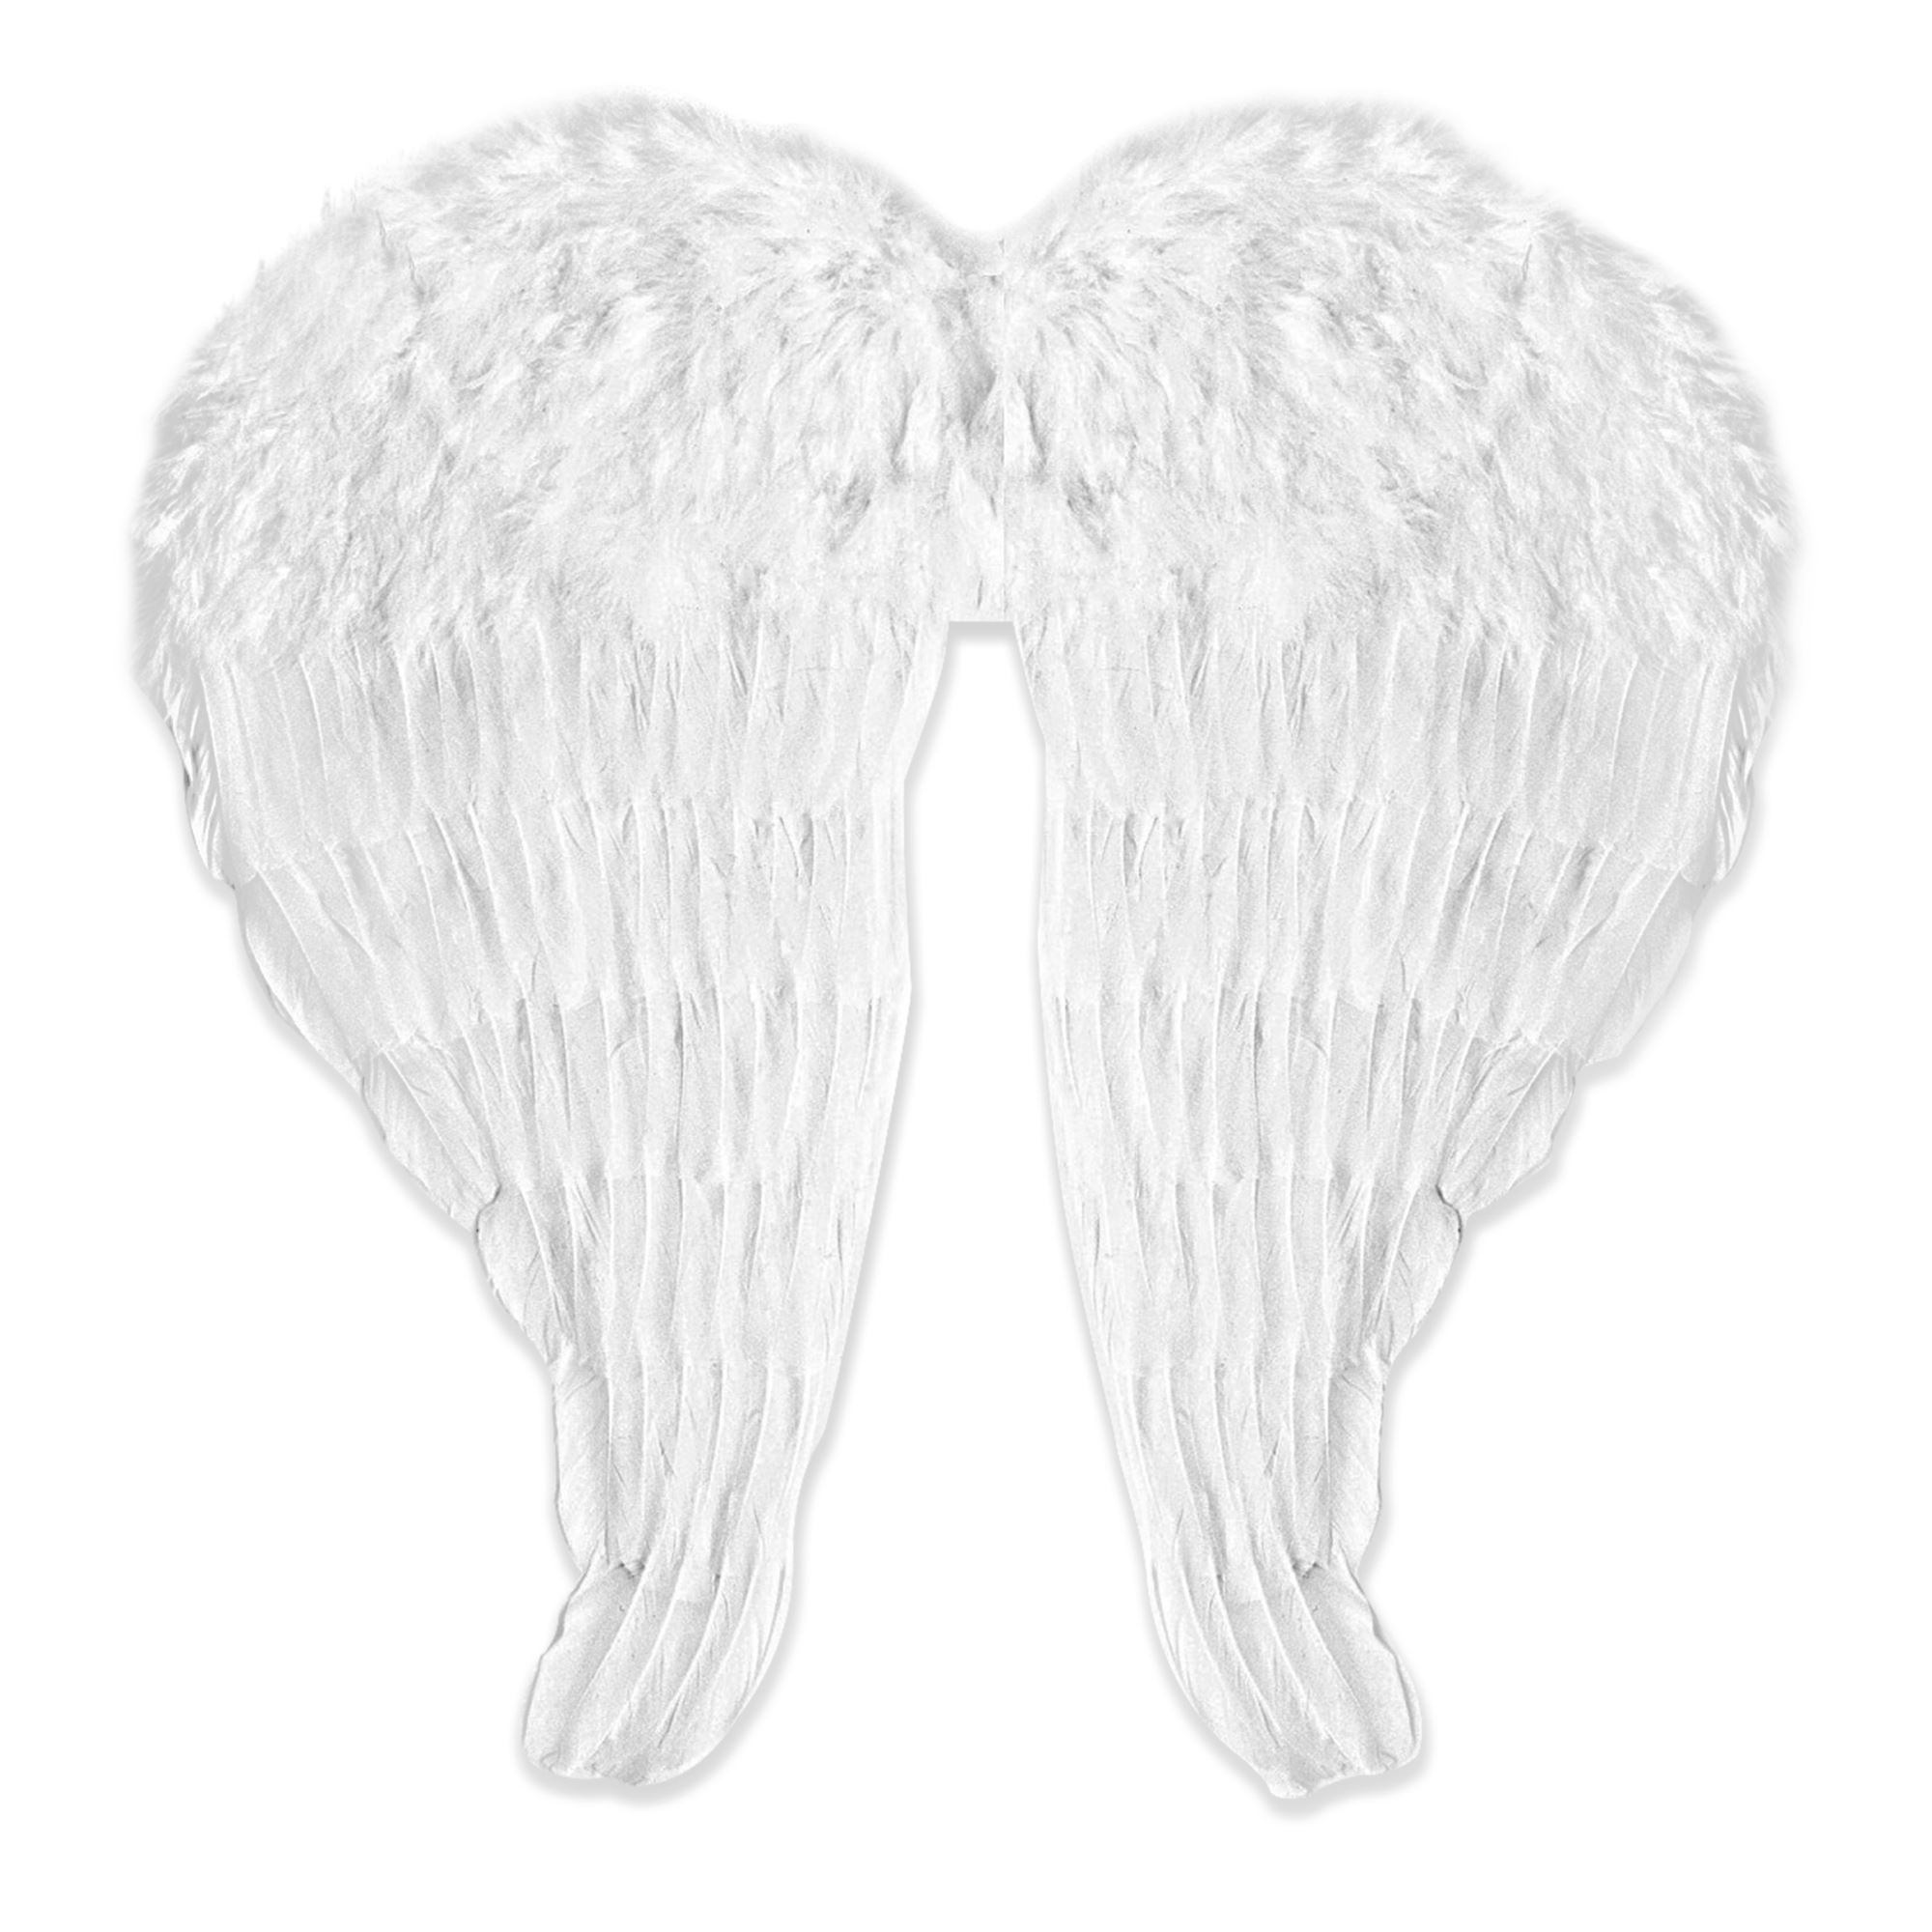 Engelenvleugel van veren gemaakt in het wit vleugel engel 